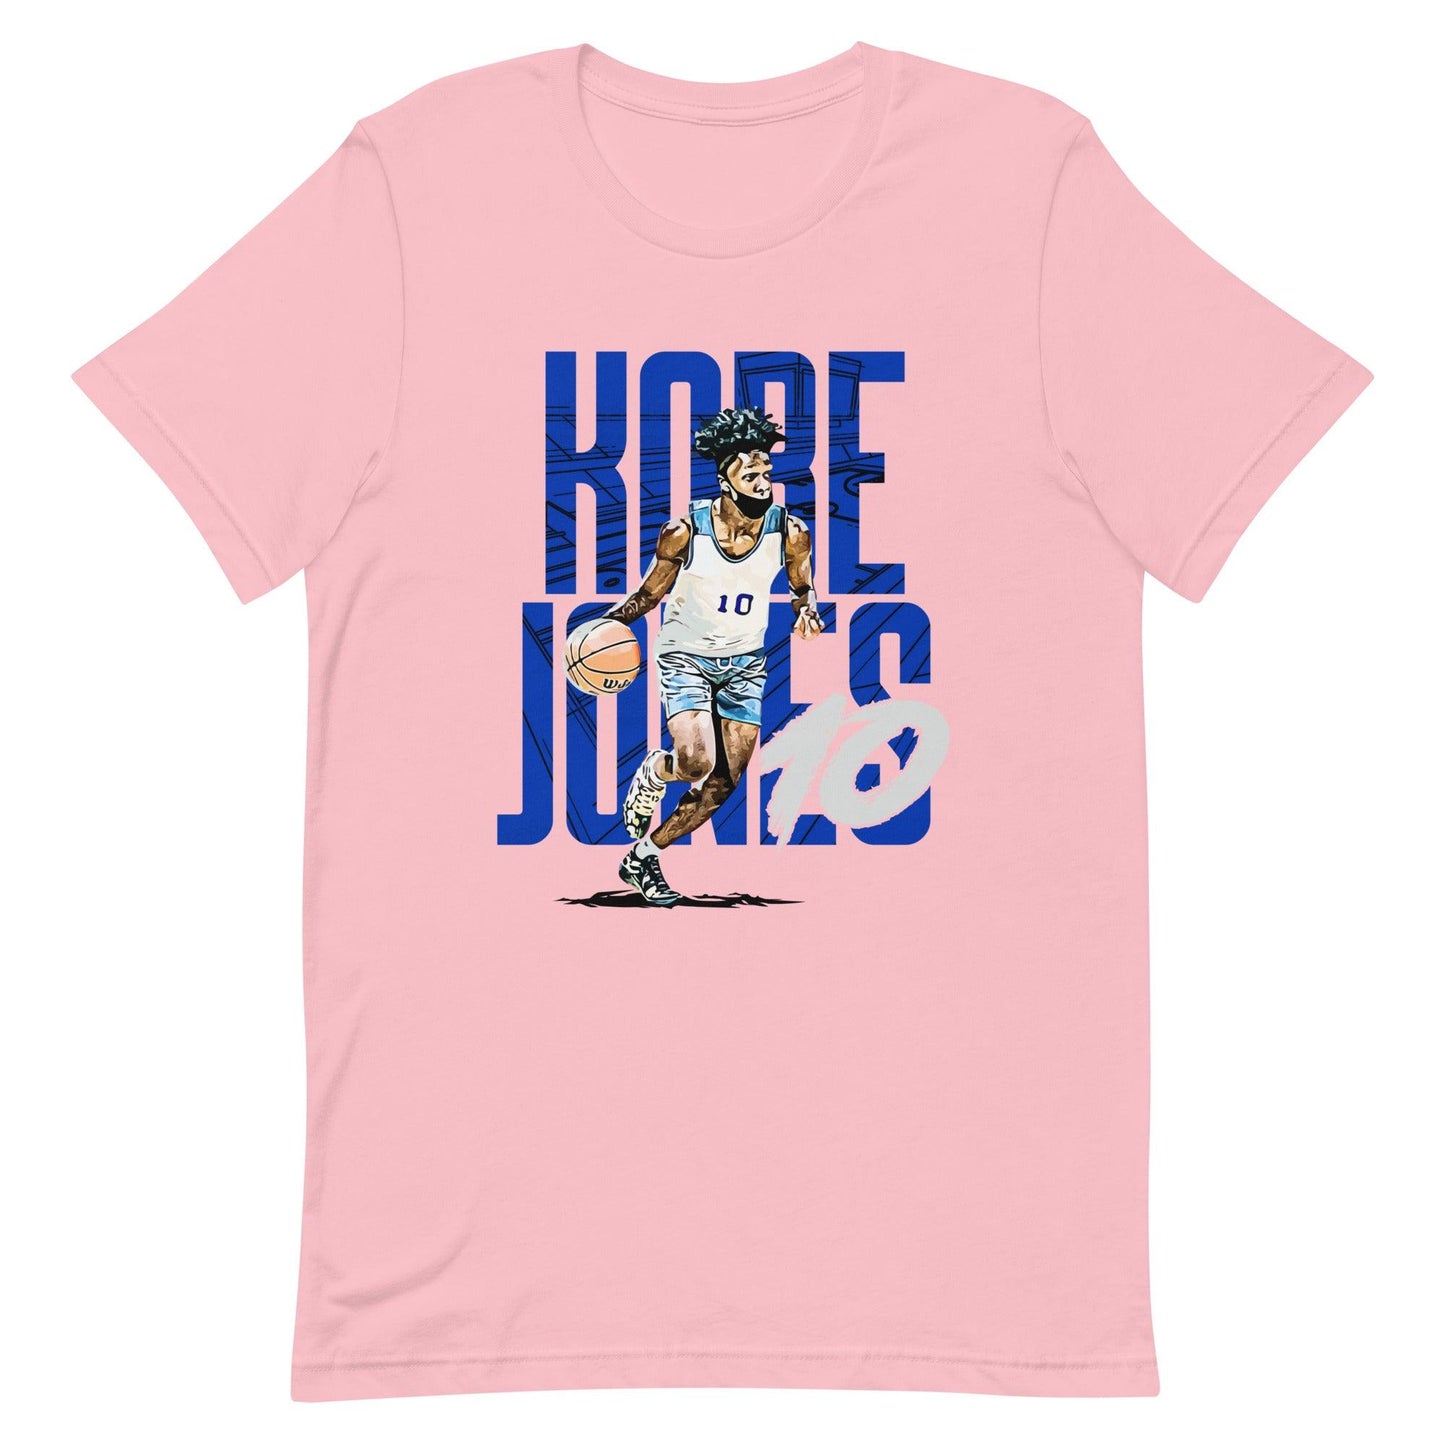 Kobe Jones "Gameday" t-shirt - Fan Arch